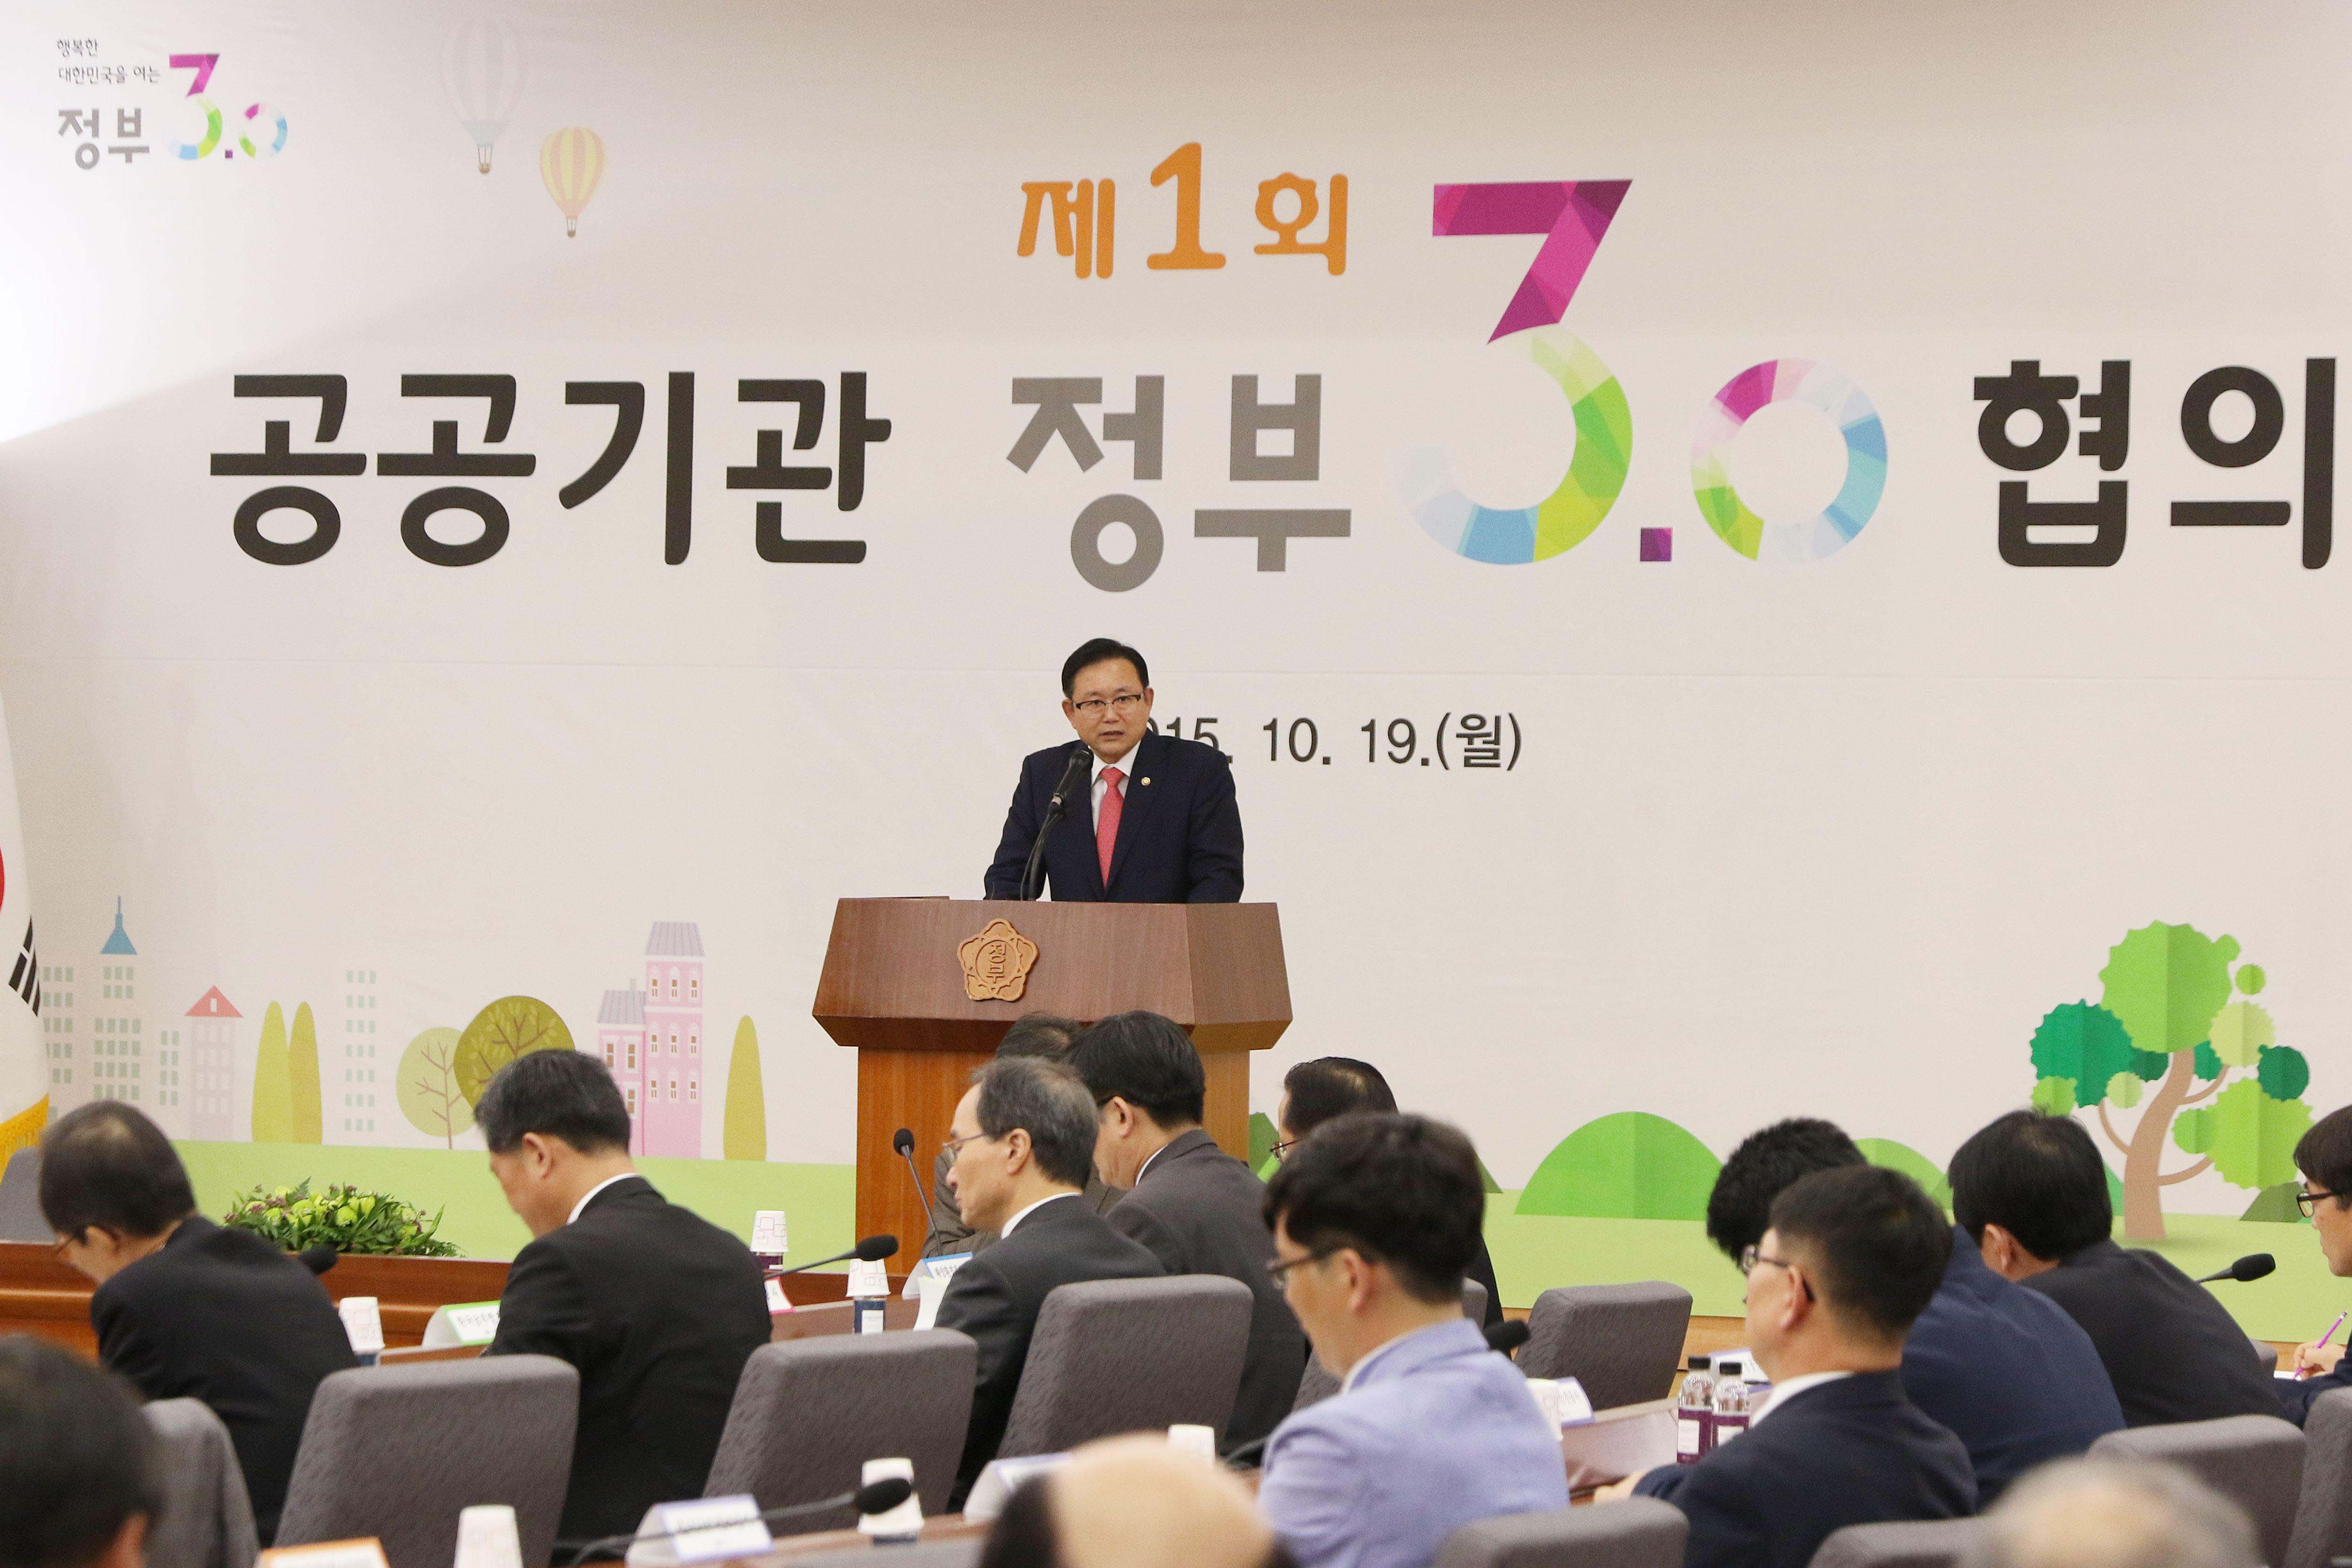 제1회 공공기관 정부3.0 협의회 개최